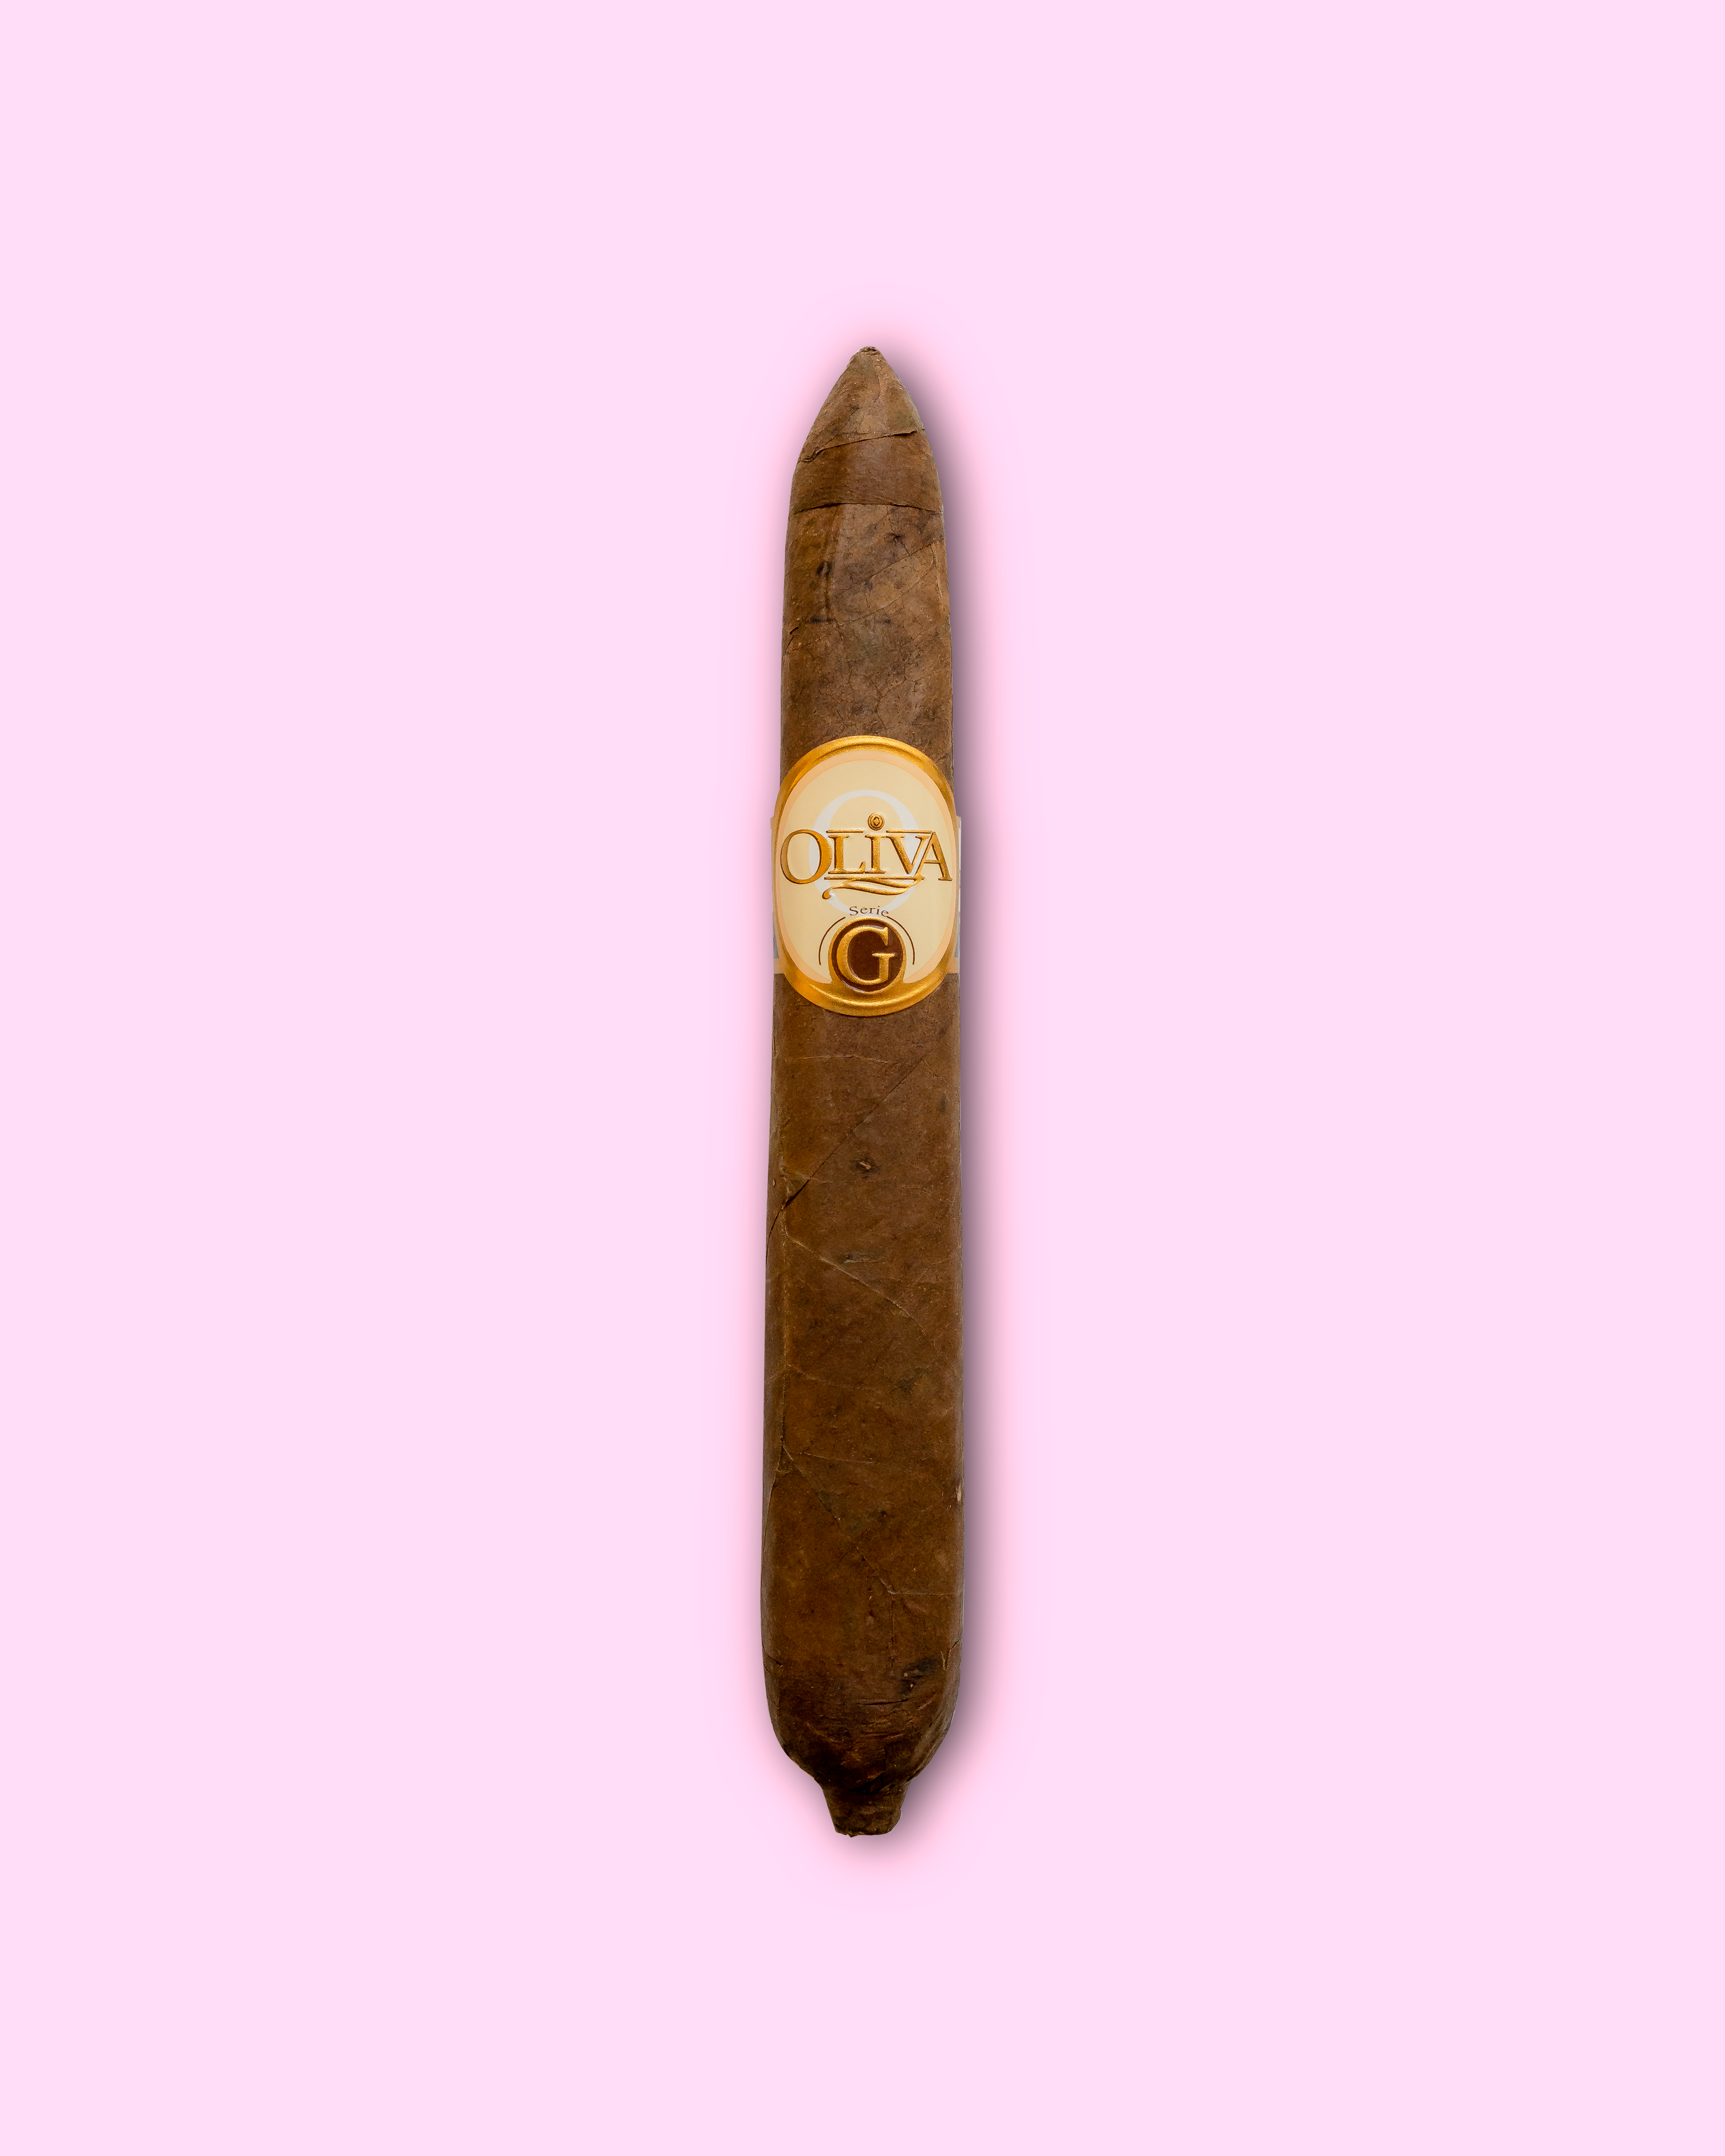 Oliva Series G Figurado Cigar